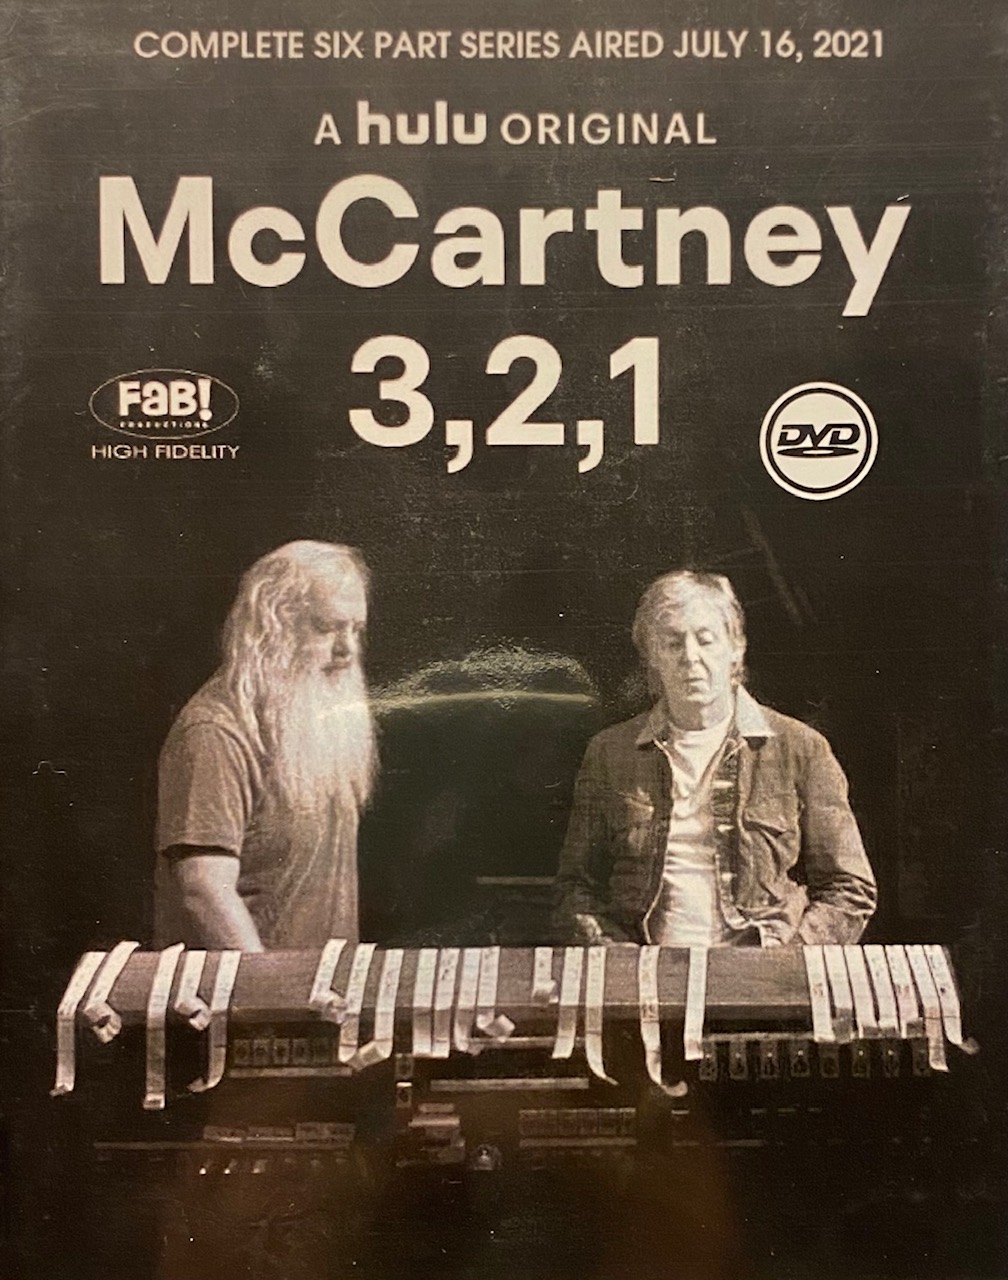 MCCARTNEY PAUL - MCCARTNEY 3, 2, 1